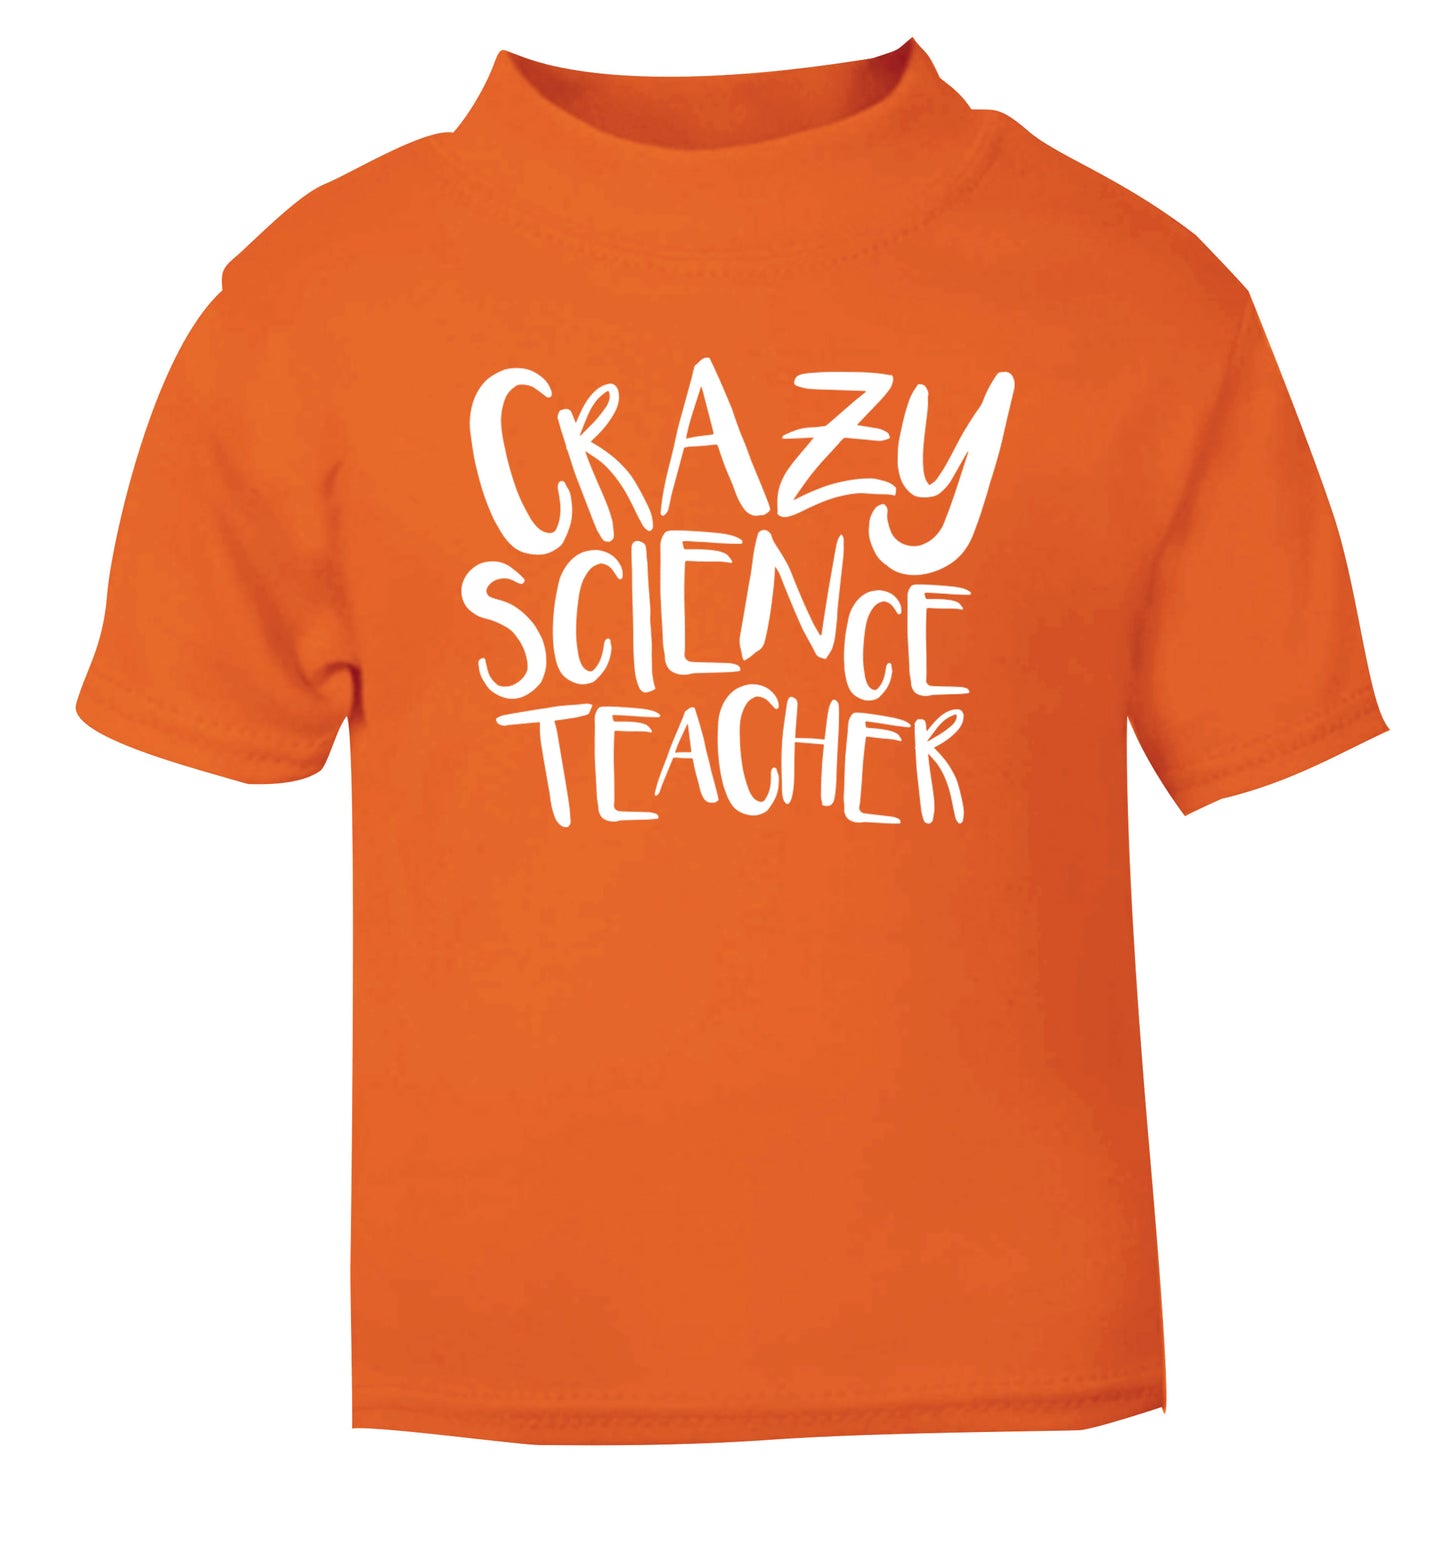 Crazy science teacher orange Baby Toddler Tshirt 2 Years